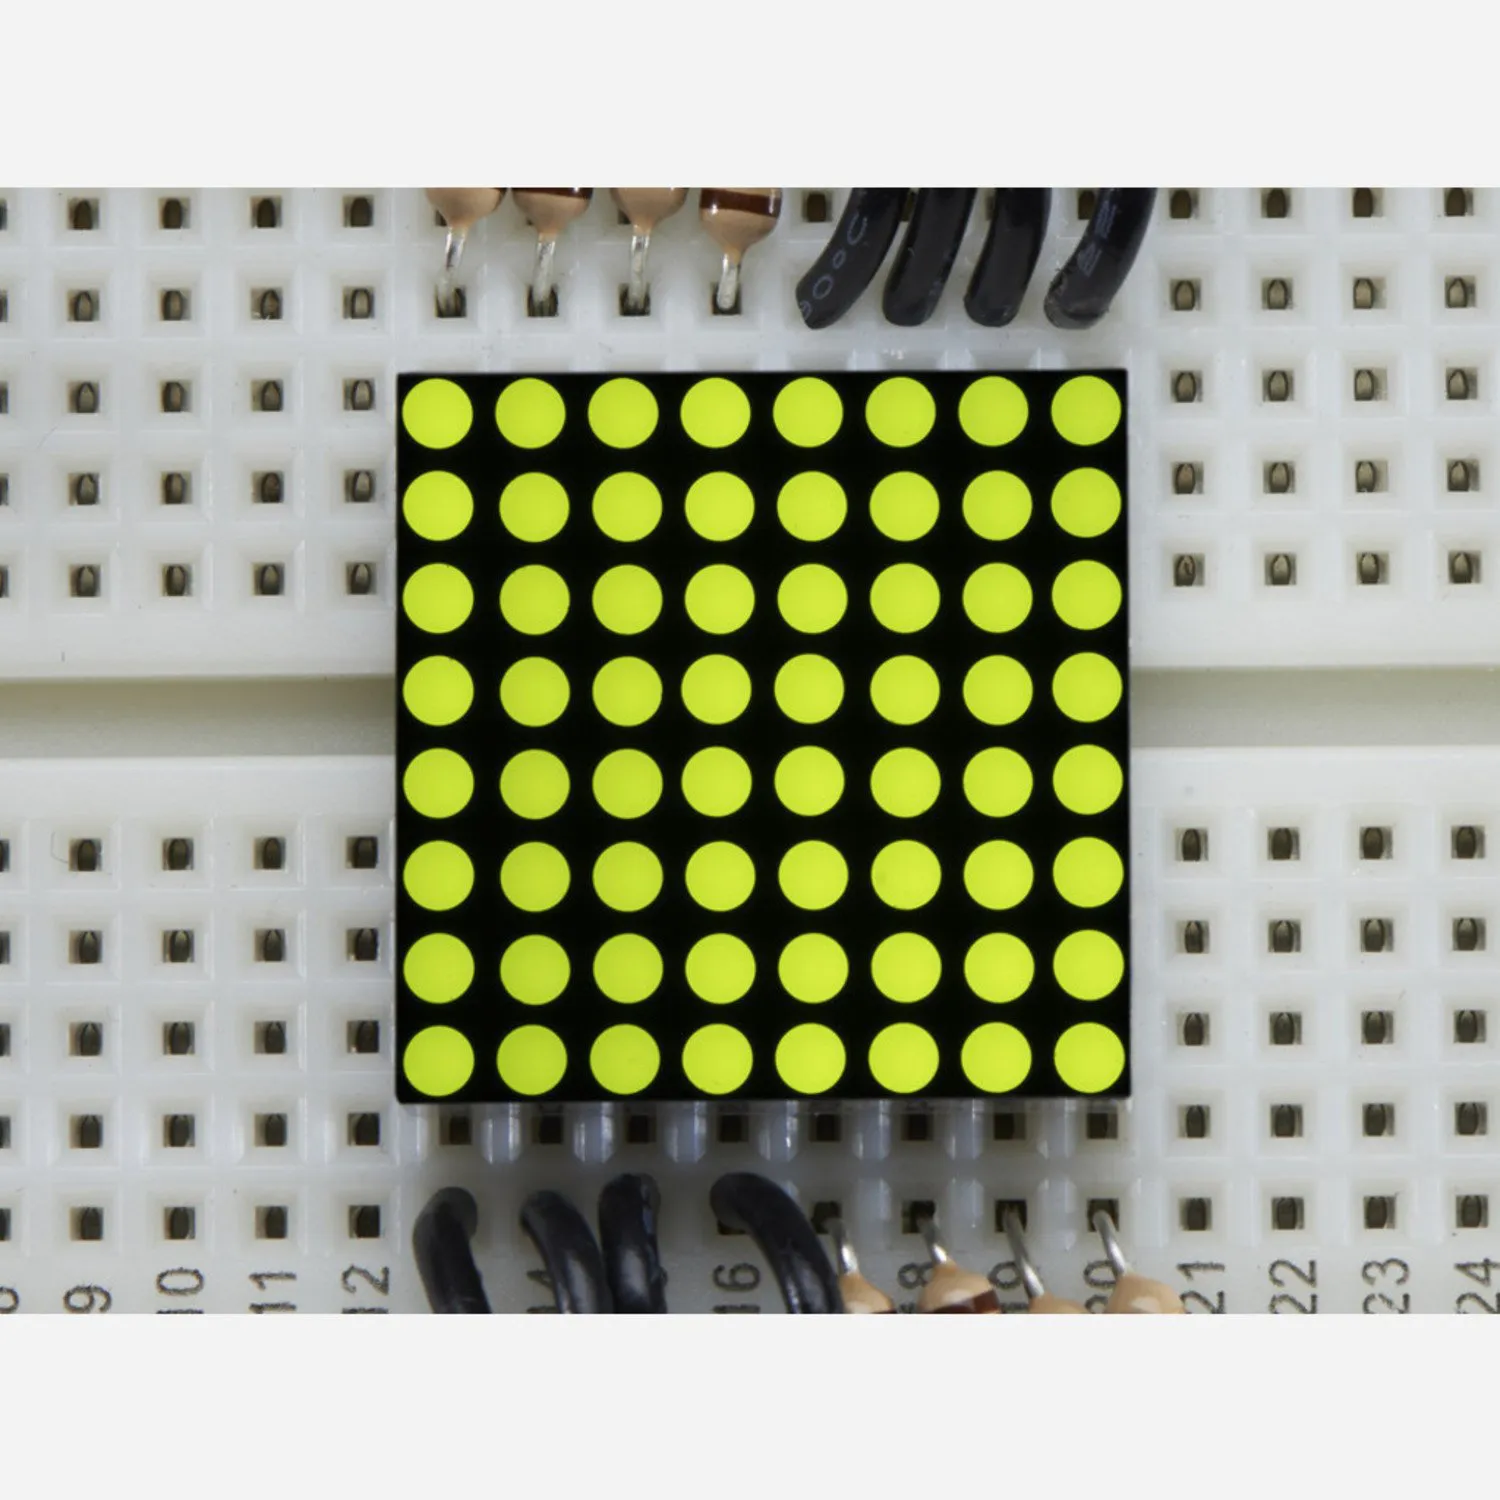 Photo of Miniature 8x8 Yellow-Green LED Matrix